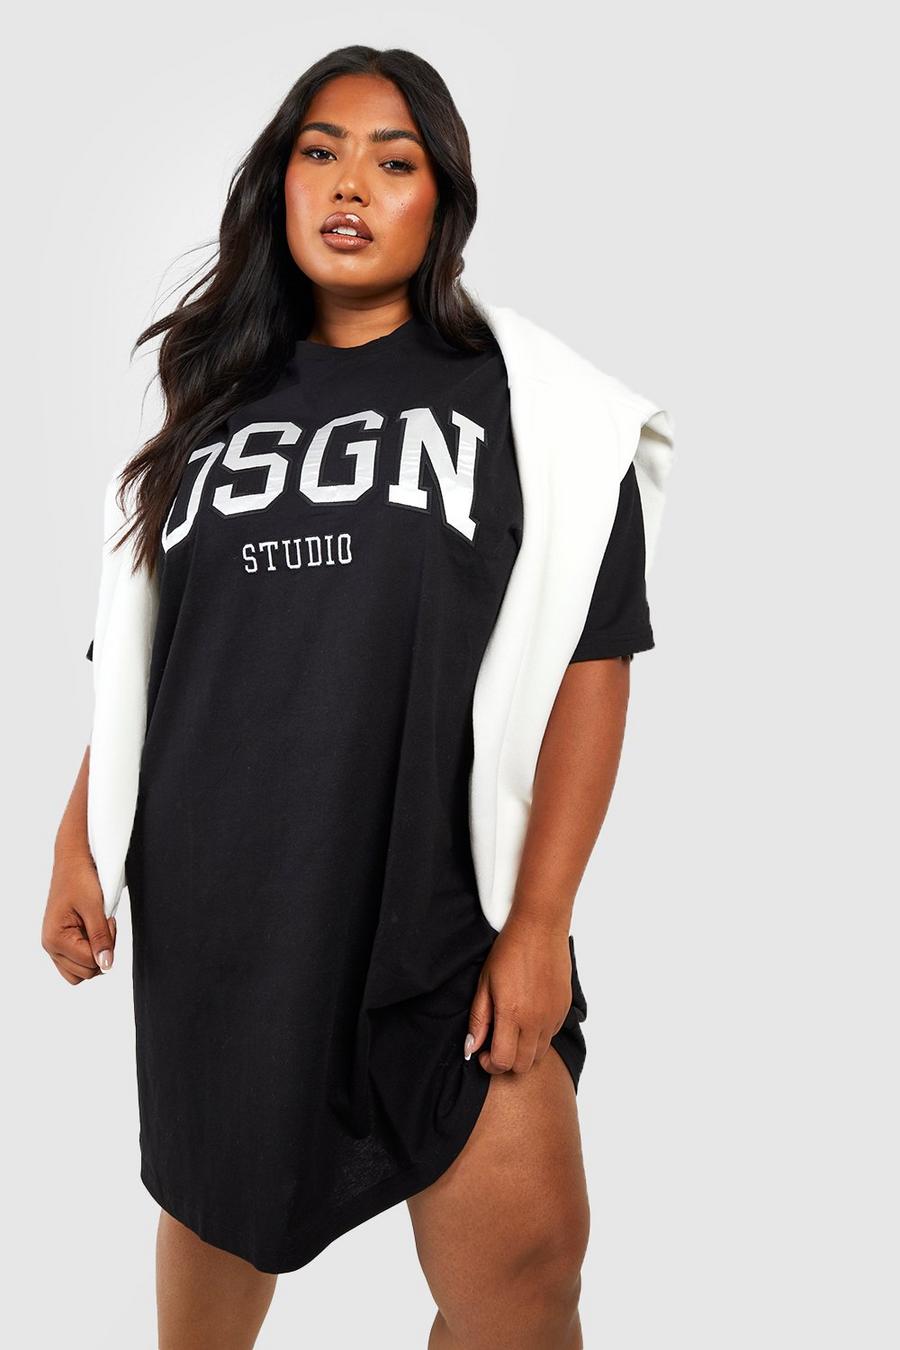 Vestito T-shirt Plus Size oversize con applique Dsgn Studio, Black negro